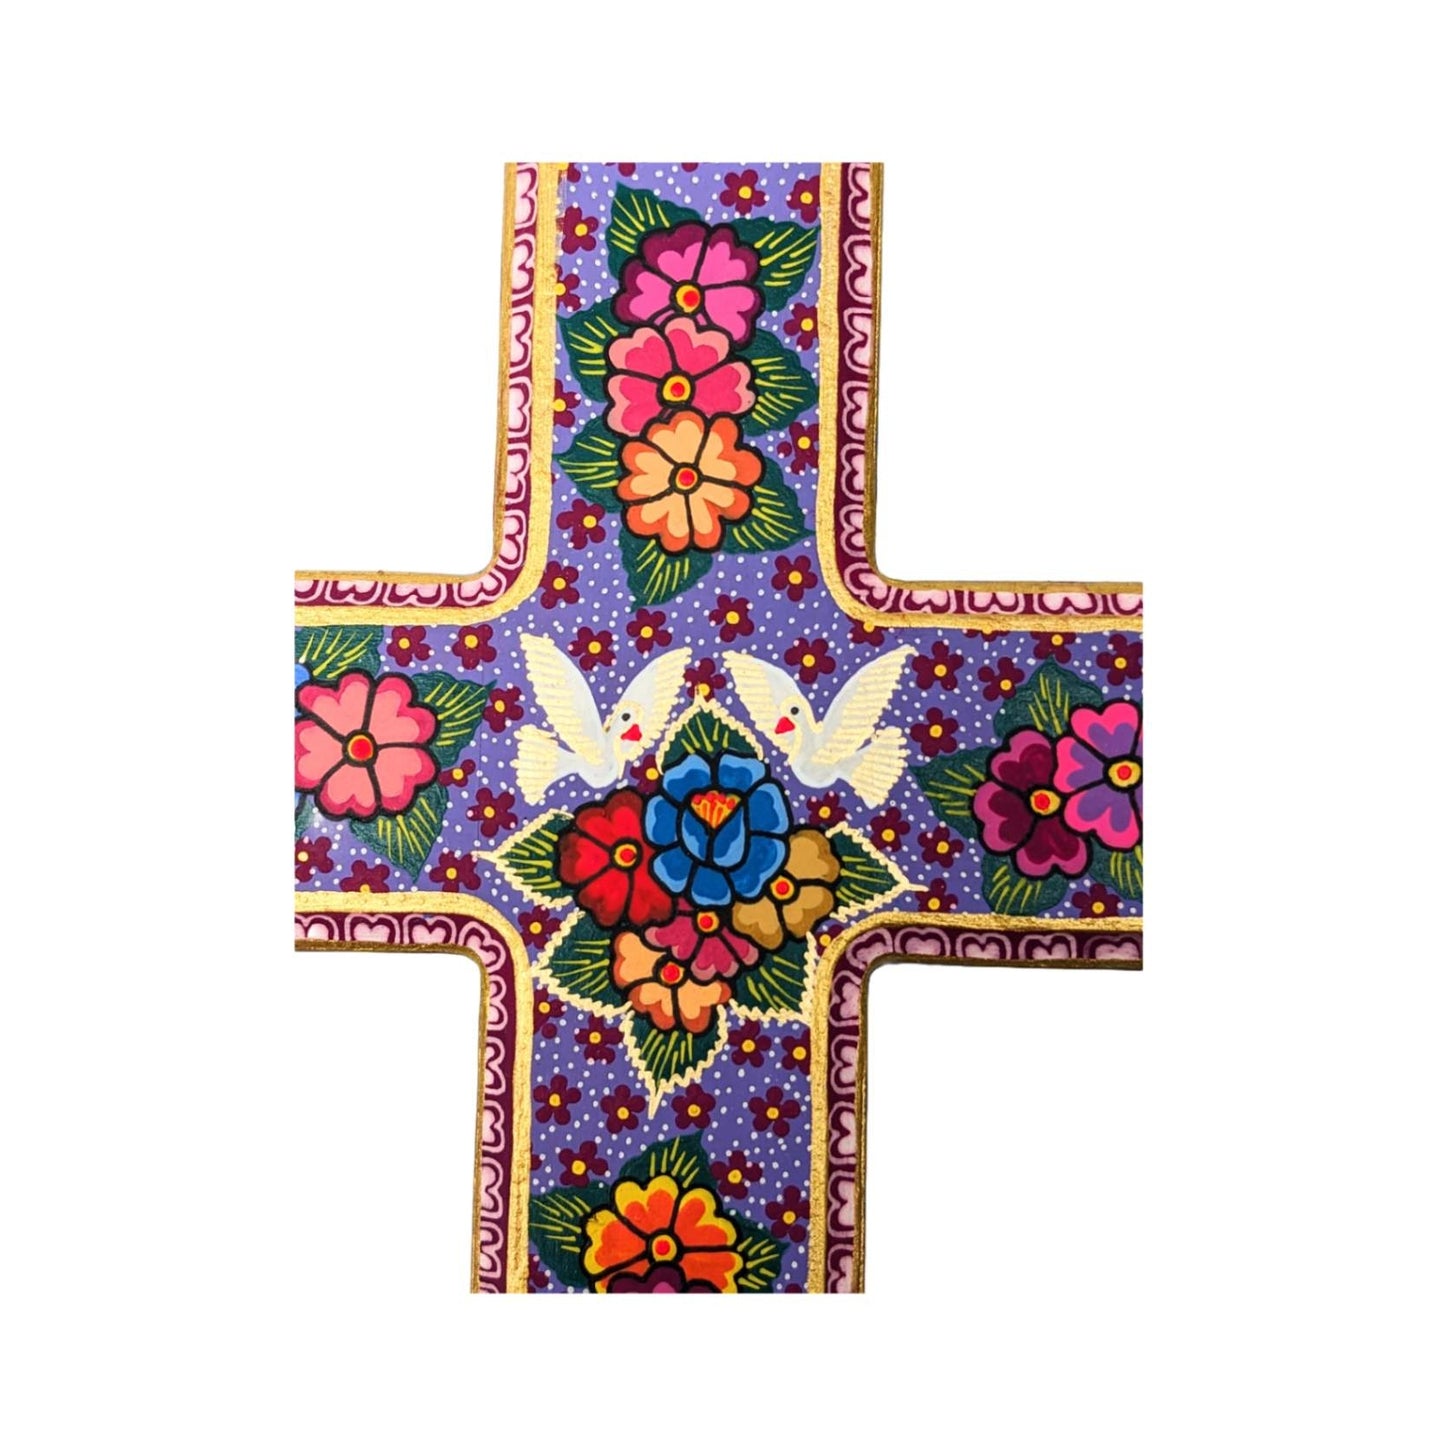 Folk Art Cross from Oaxaca, Mexico